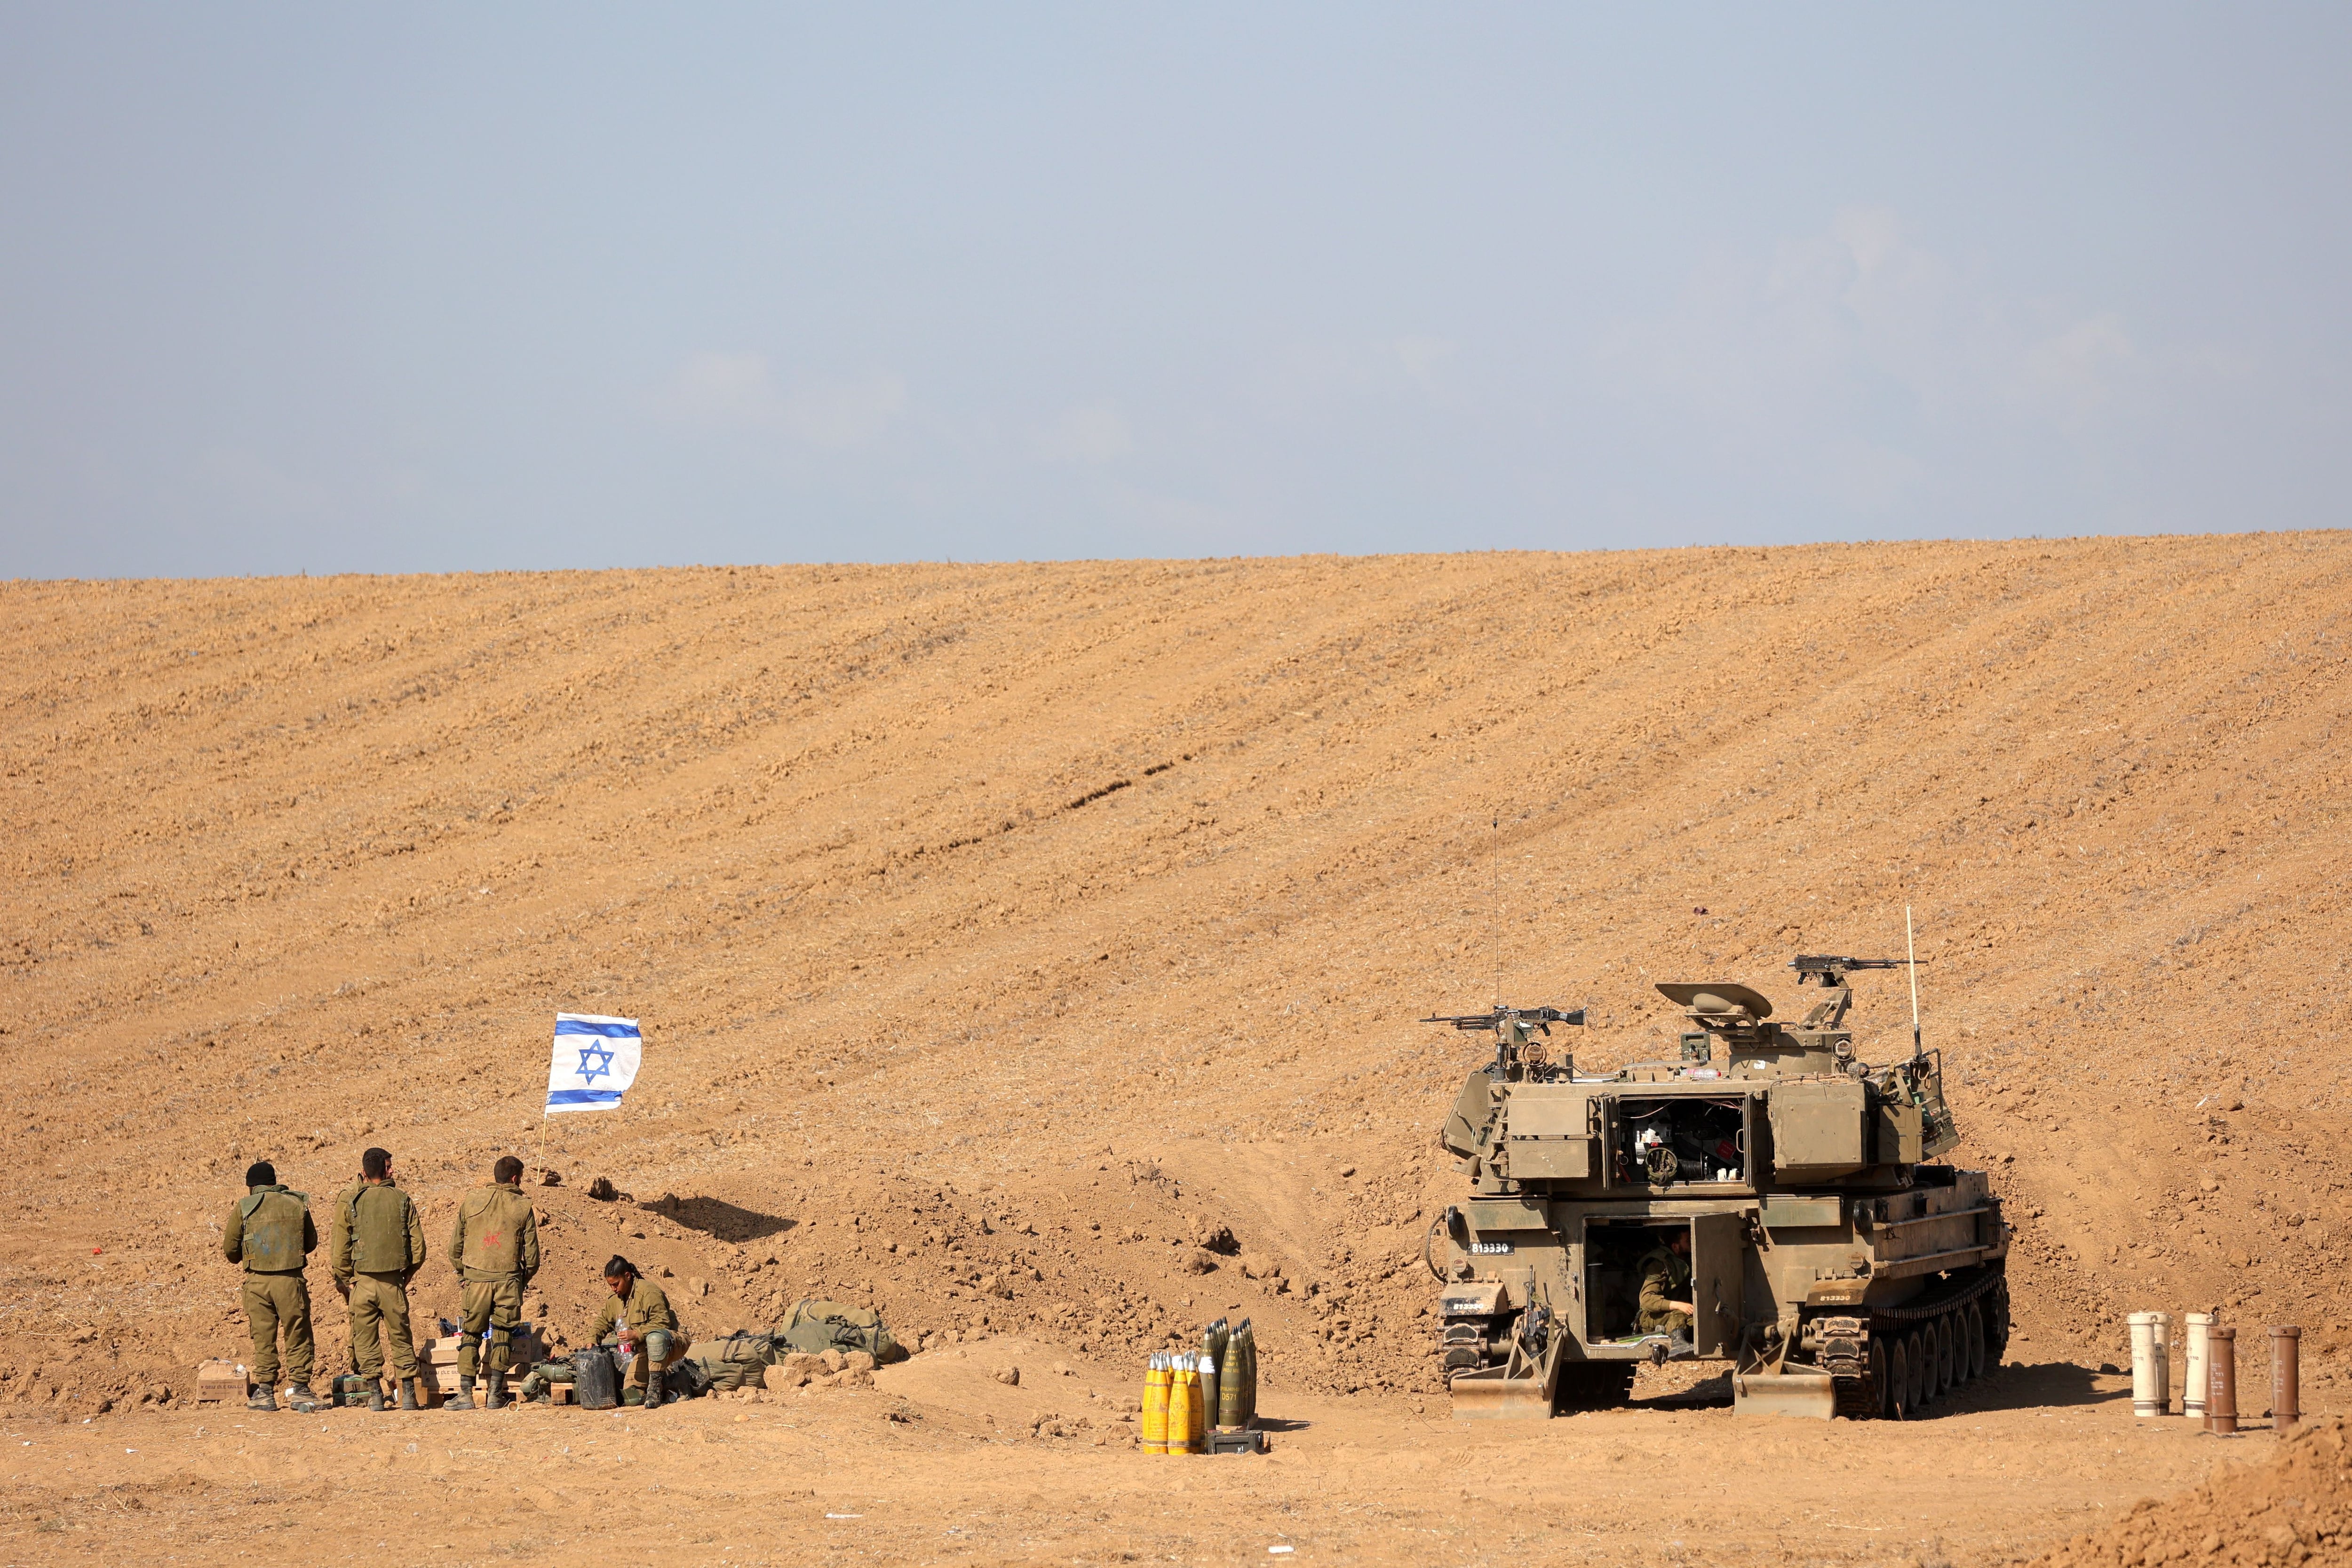 Un grupo de soldados israelíes cerca de un tanque en una zona a lo largo de la frontera con Gaza, en el sur de Israel, el 15 de octubre de 2023. EFE/EPA/ABIR SULTAN

